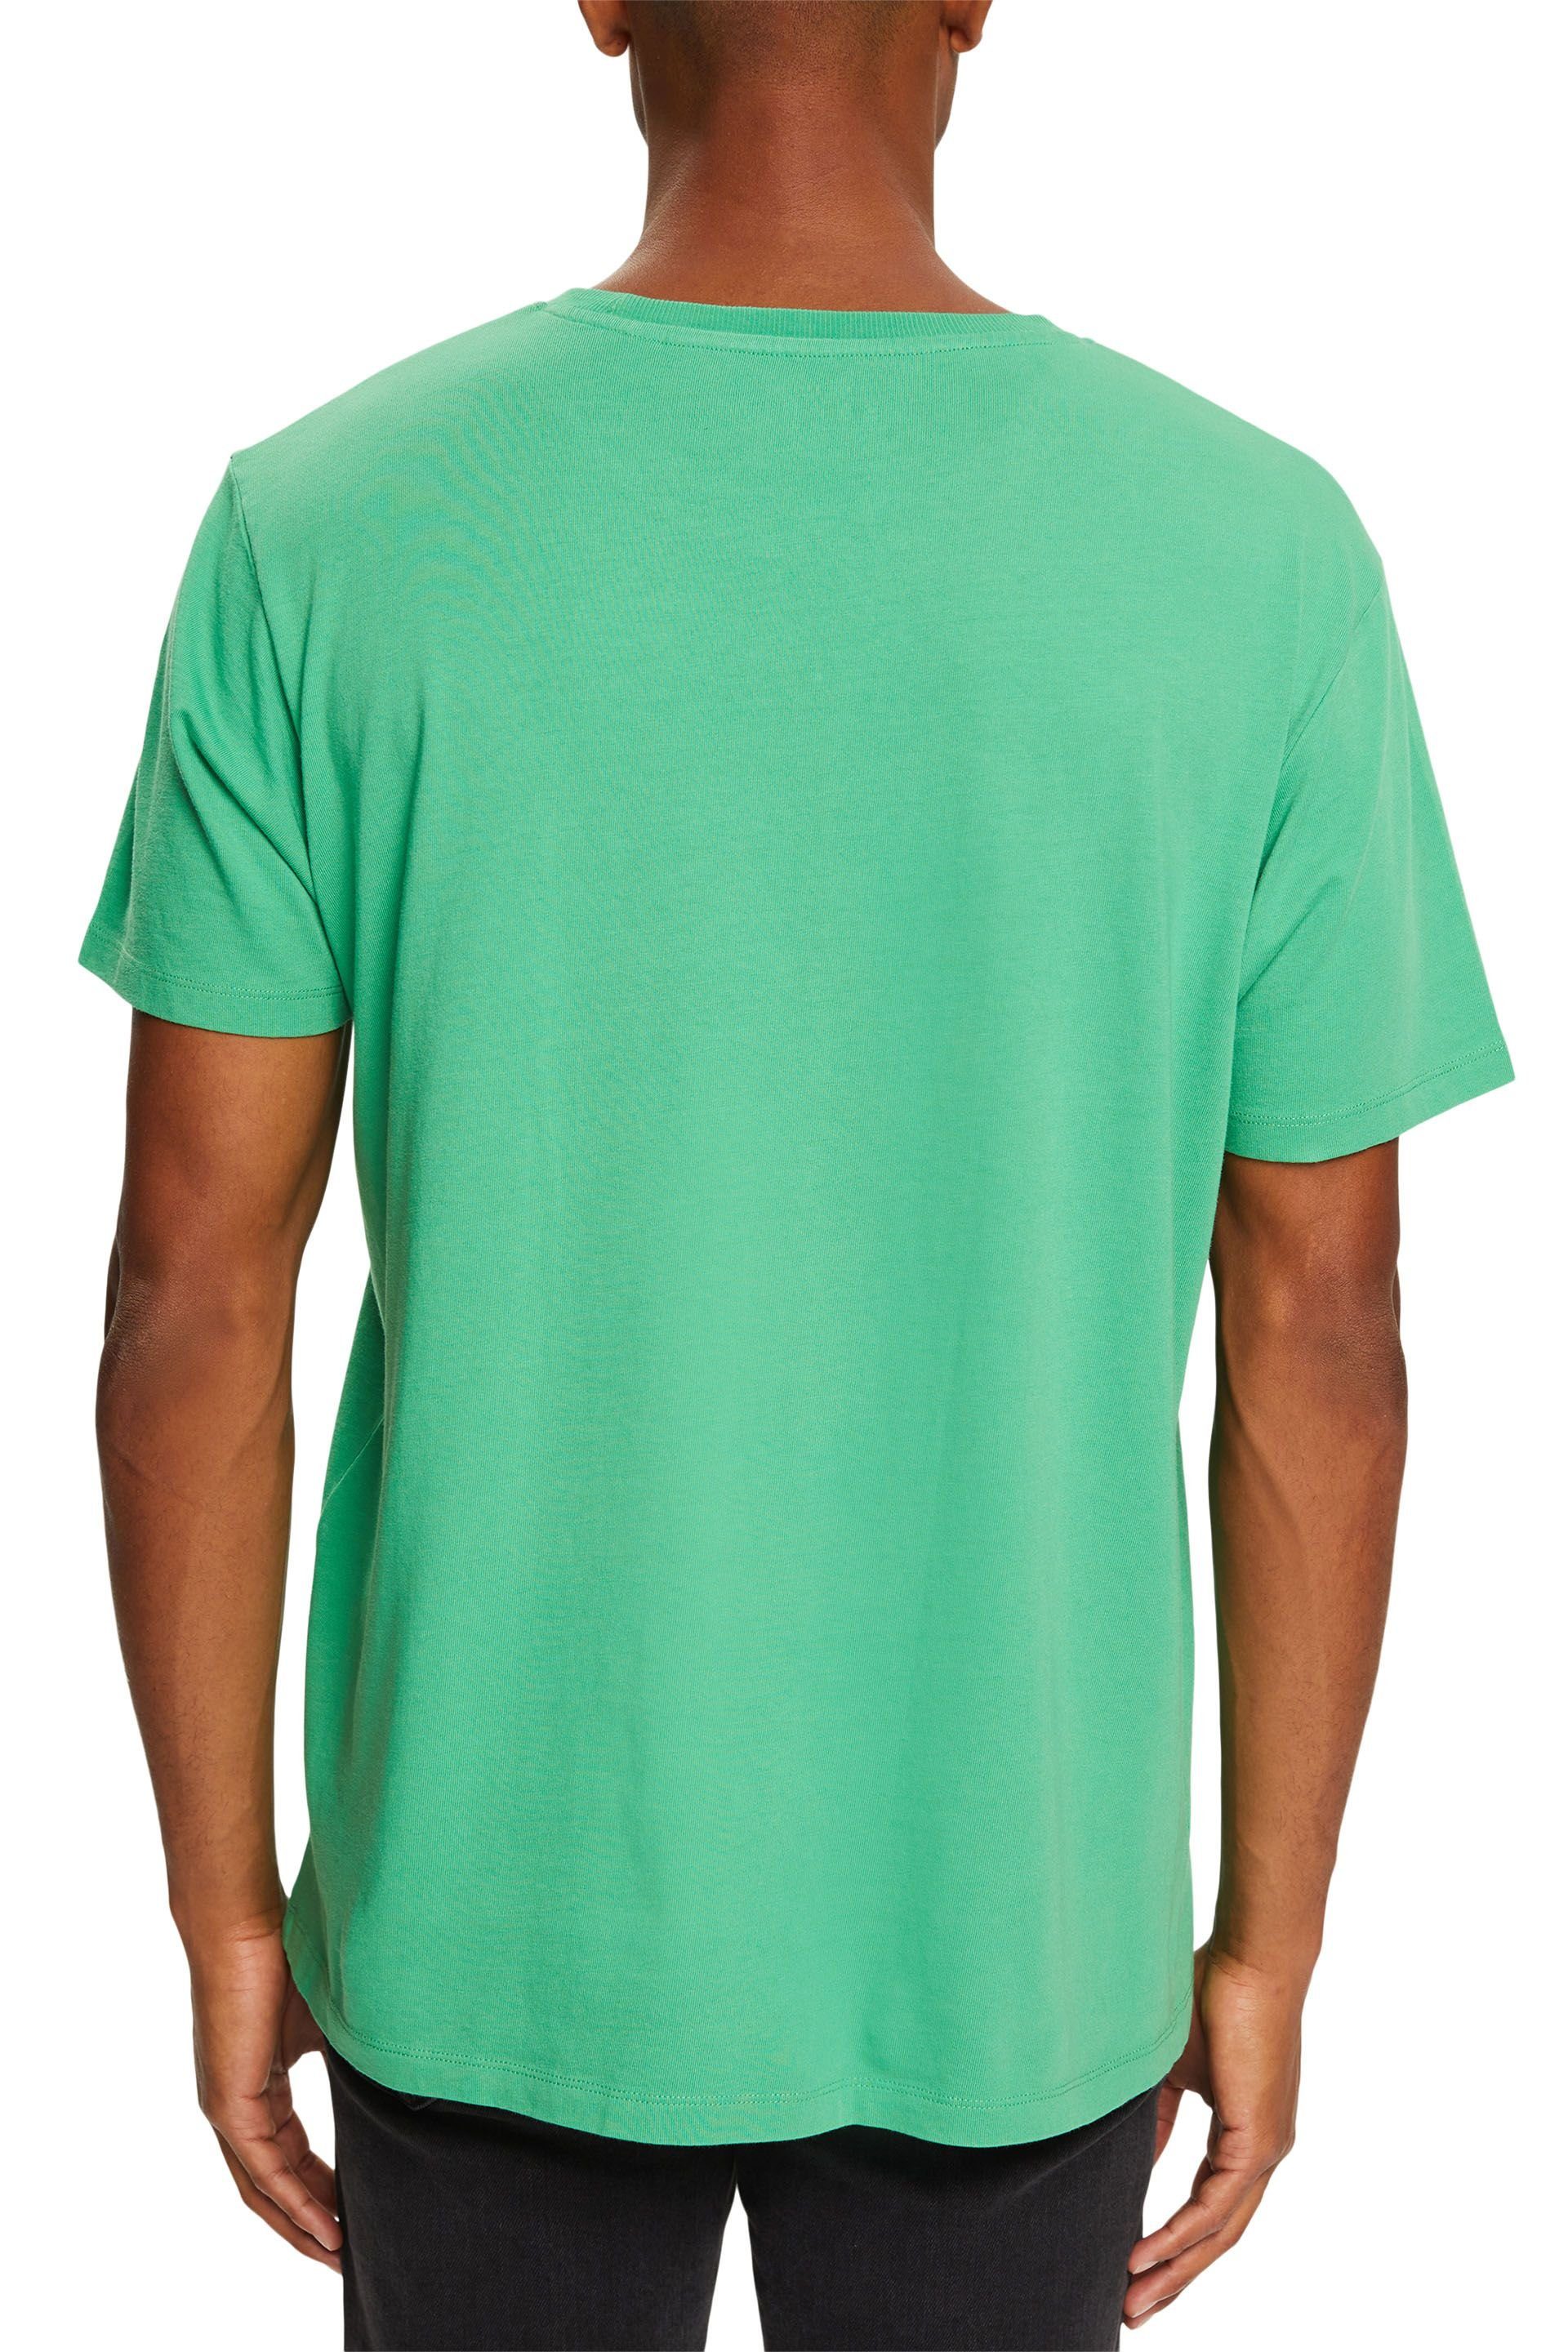 T-Shirt green Esprit